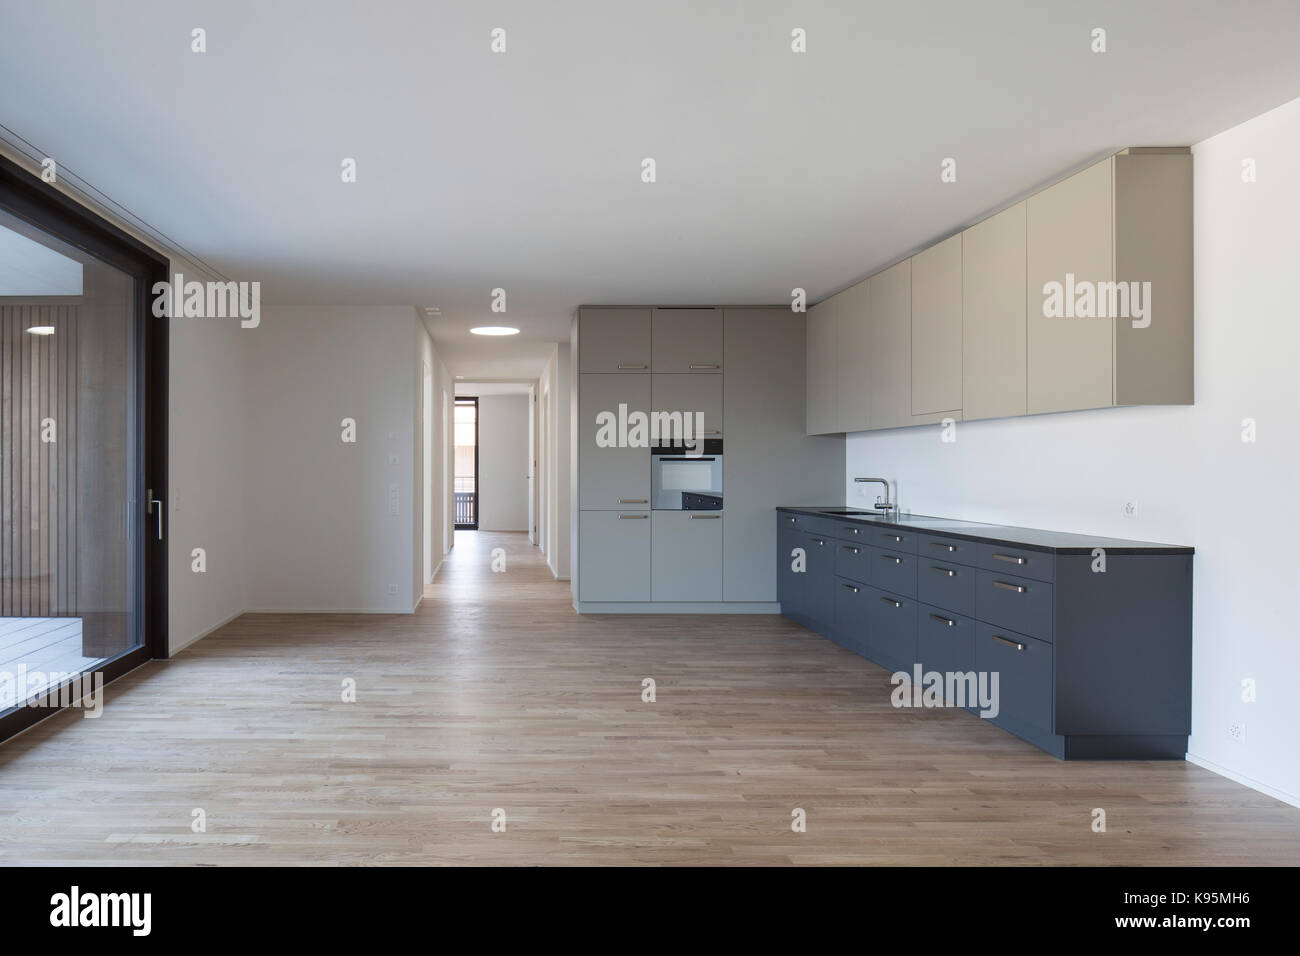 Unfurnished kitchen and corridor. Housing estate Malters, Malters, Switzerland. Architect: Diener & Diener, 2016. Stock Photo